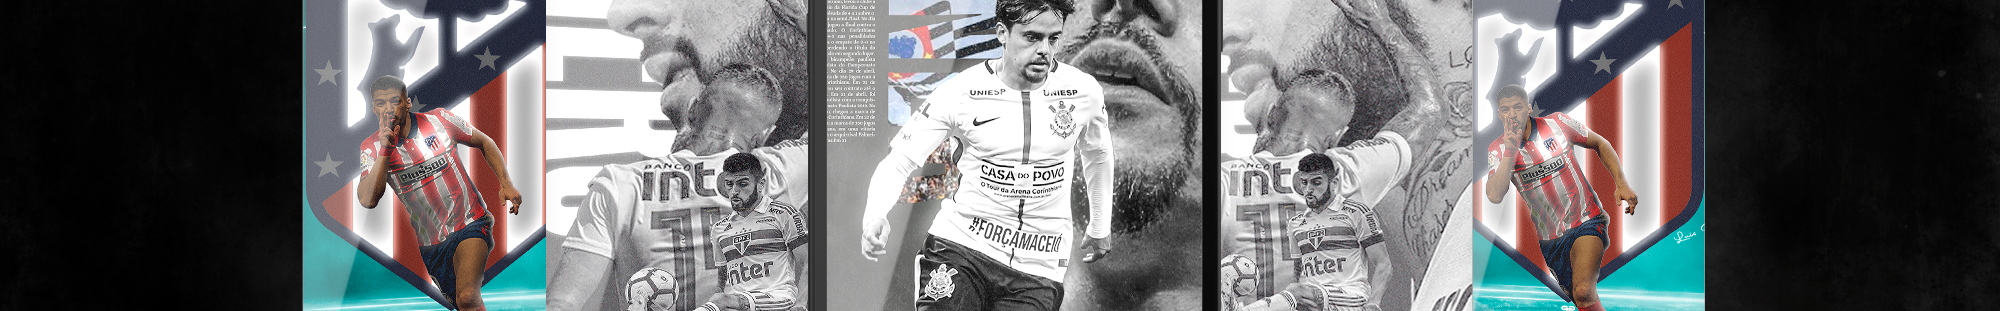 Gabriel Eduardo Gargiulo de Souza's profile banner